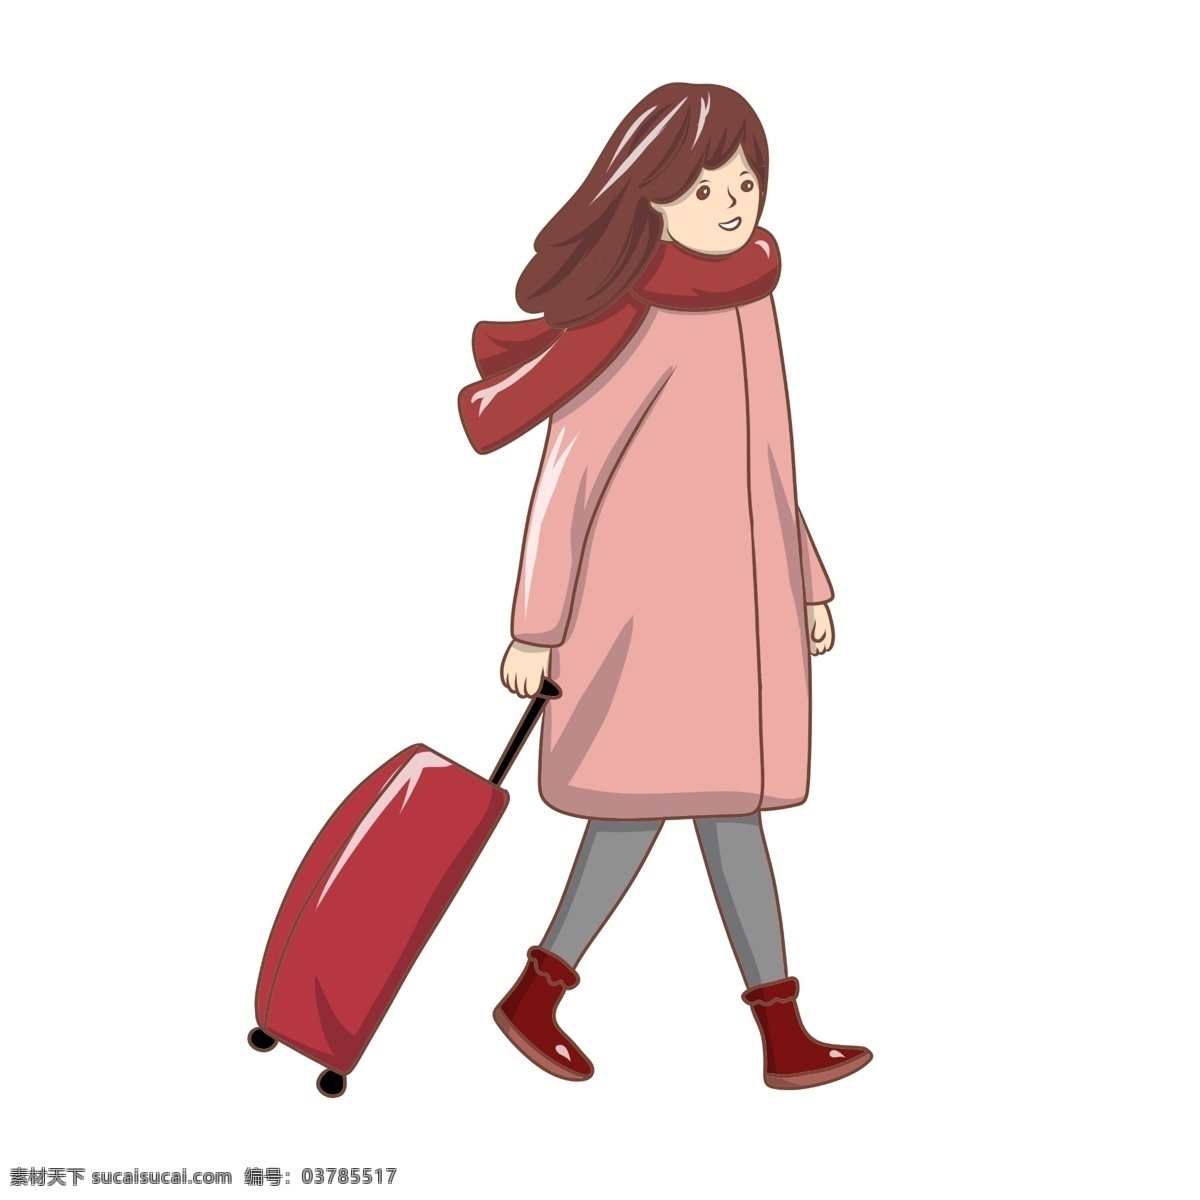 放假 回家 大学生 插画 拉 行李箱 女孩 放暑假 冬季 红色拉杆箱 穿棉衣的女孩 系 红色 围巾 放假回家插画 大学生放假了